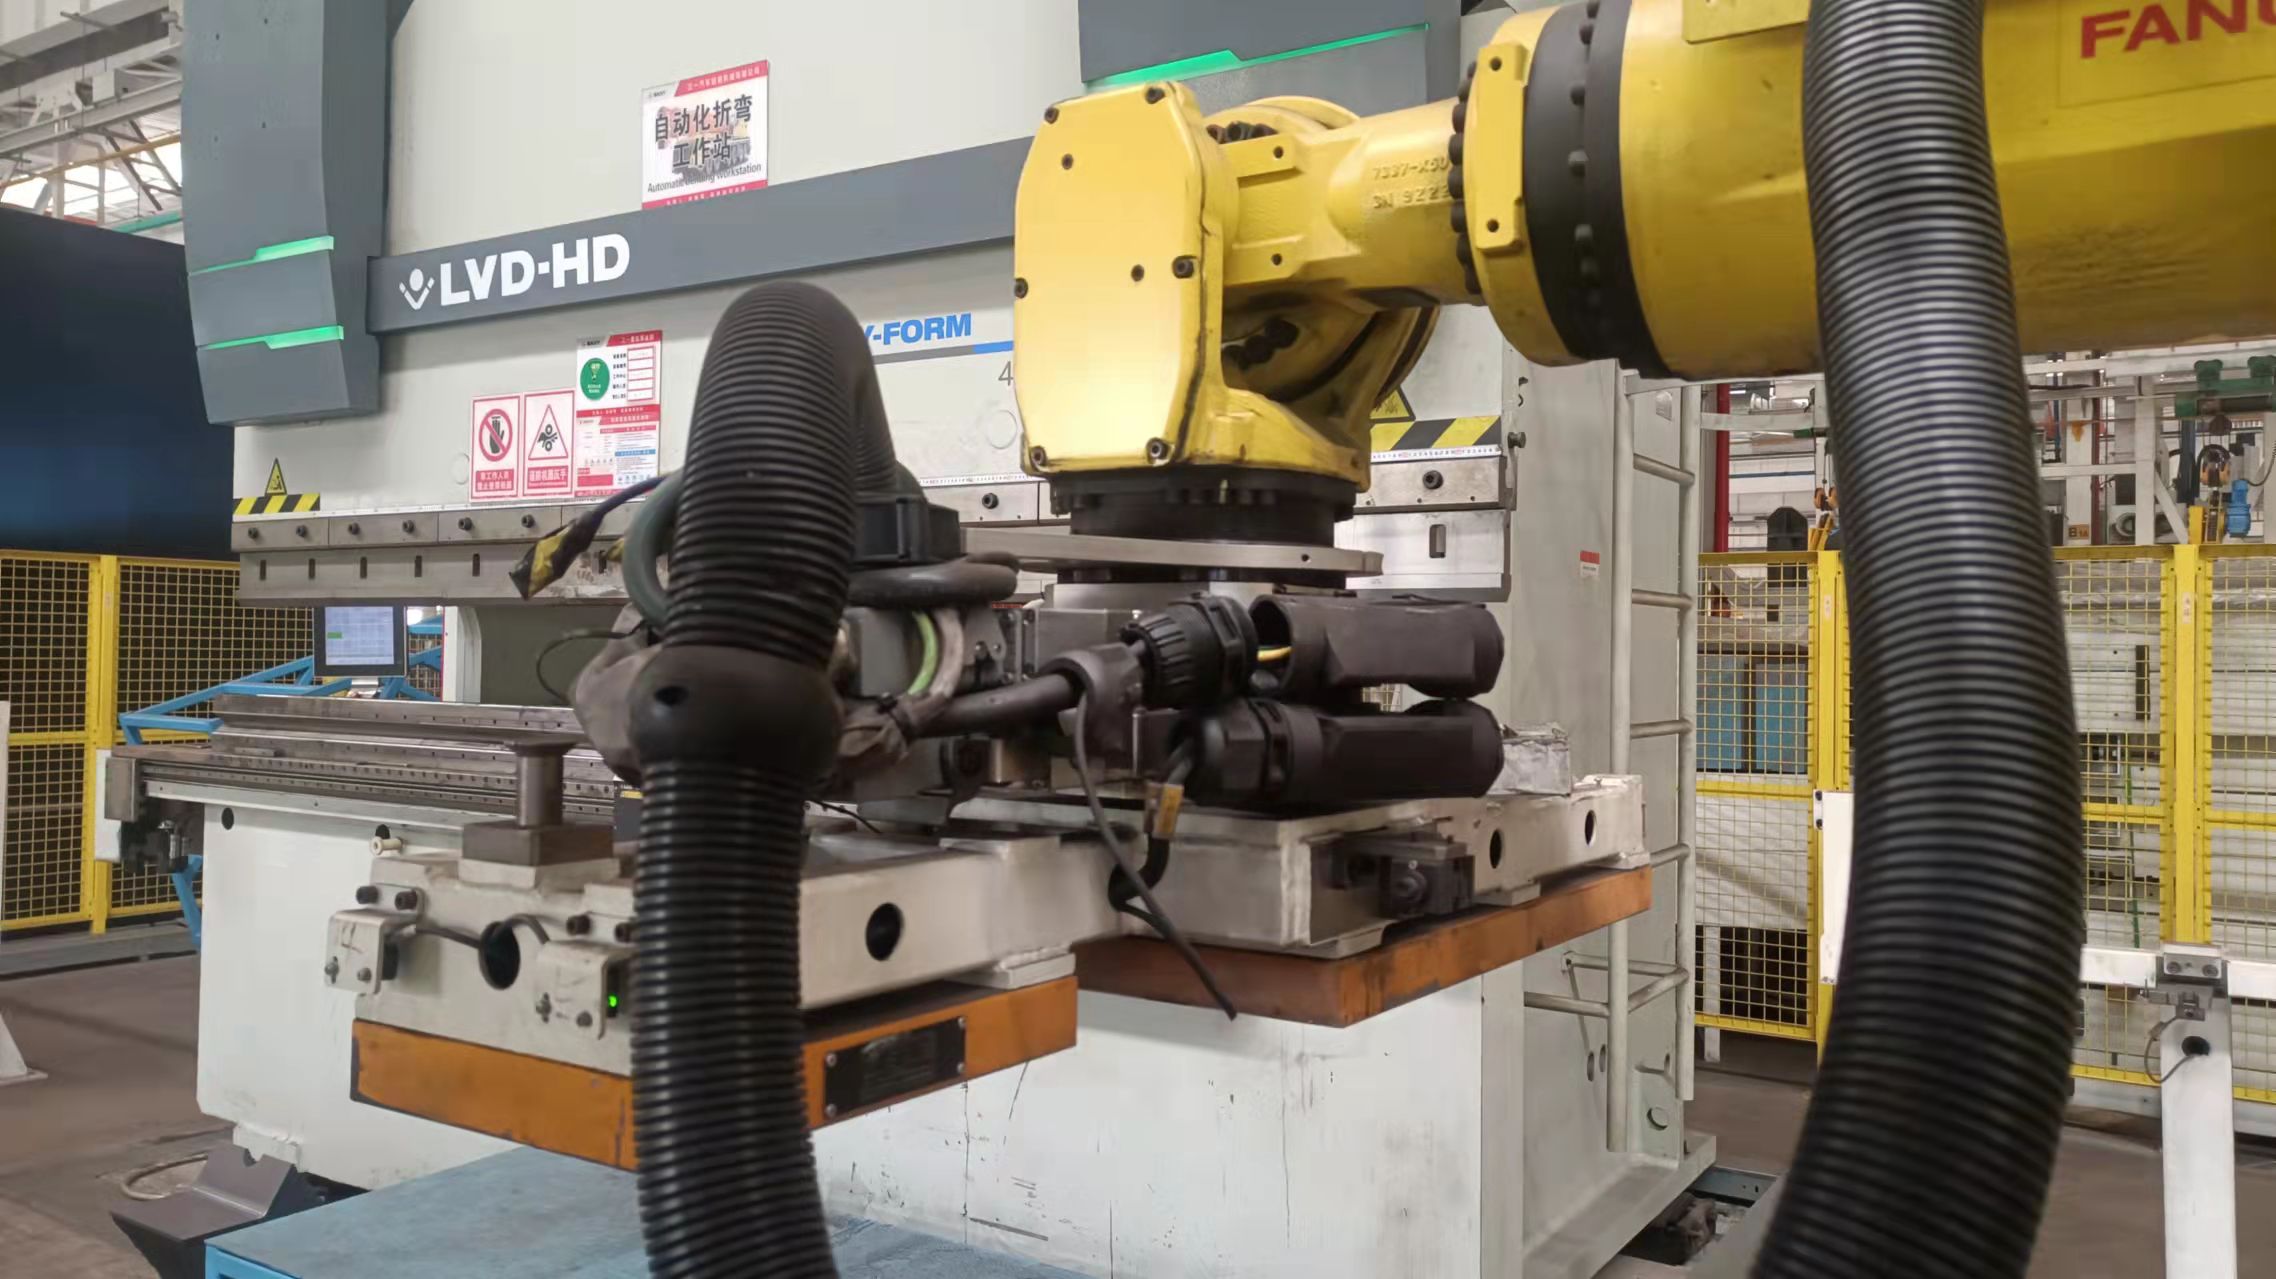 FANUC robot gripper in automatic bending workstation - HVR MAG